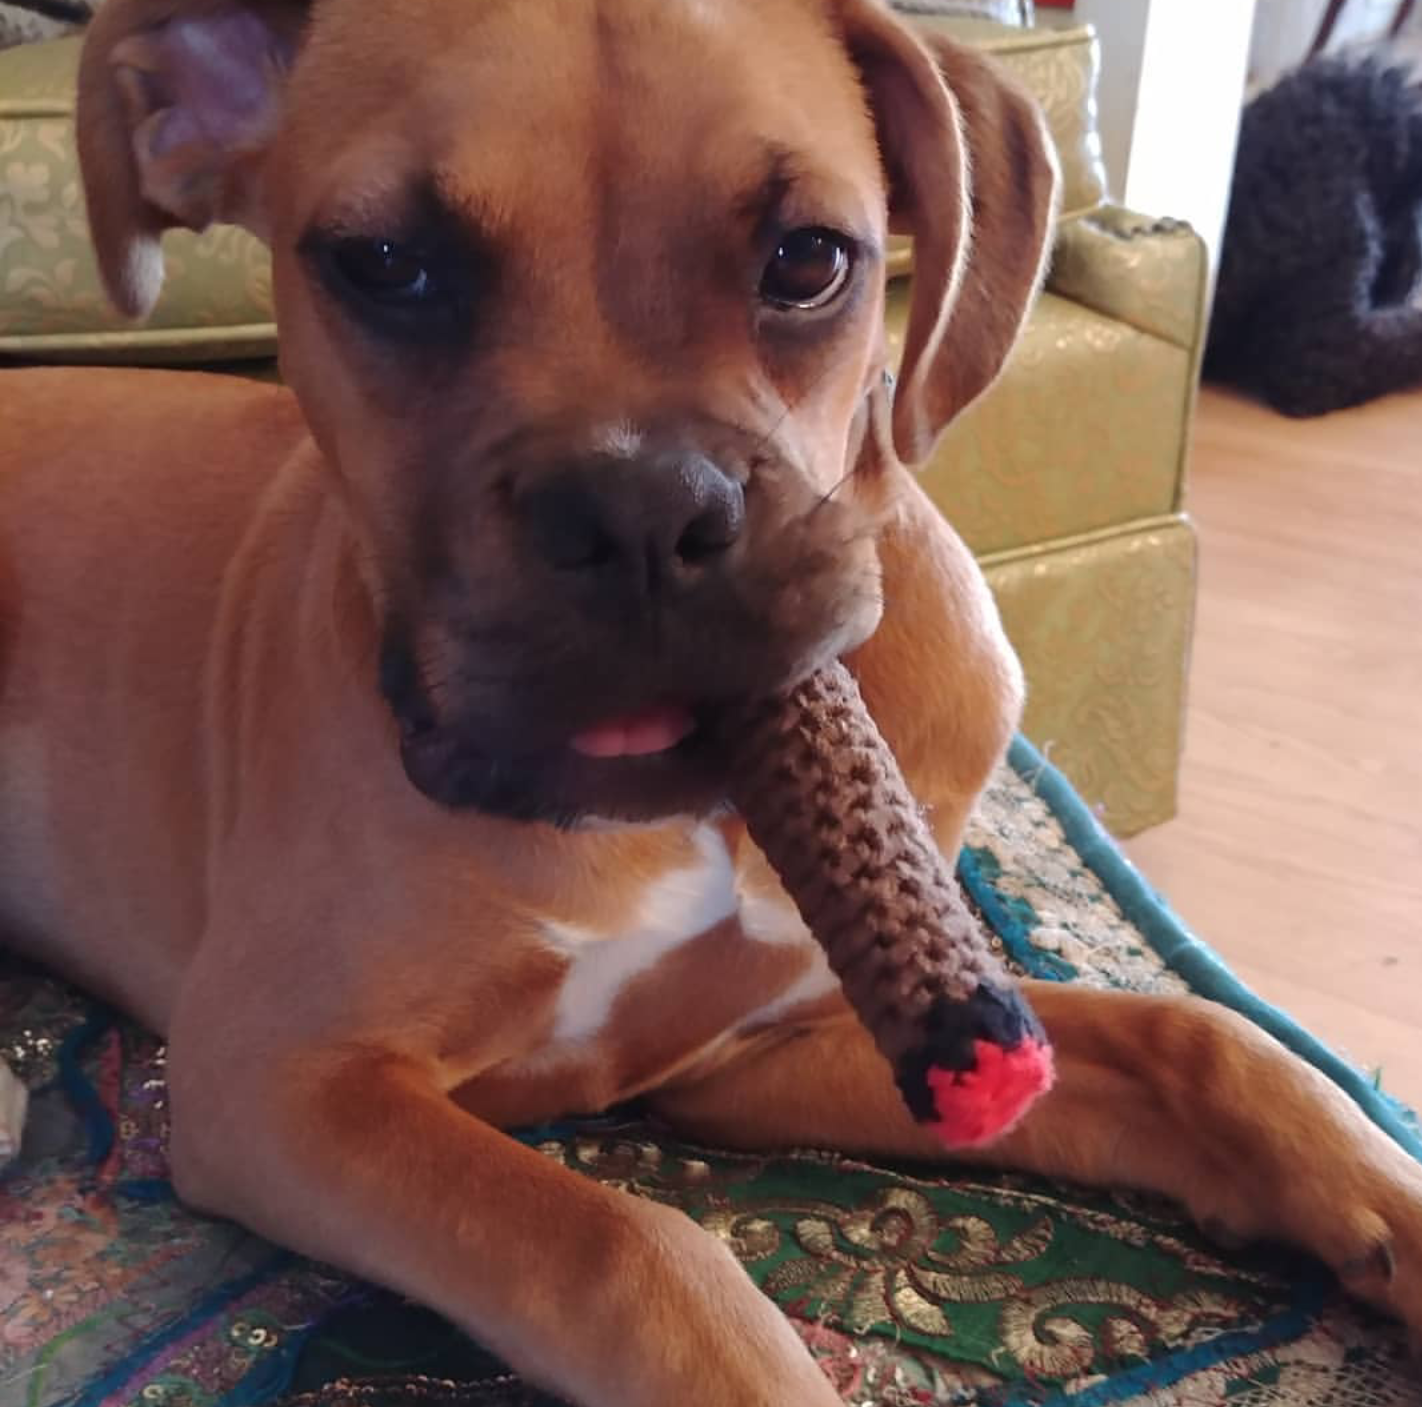 My mom crocheted my dog a cigar...